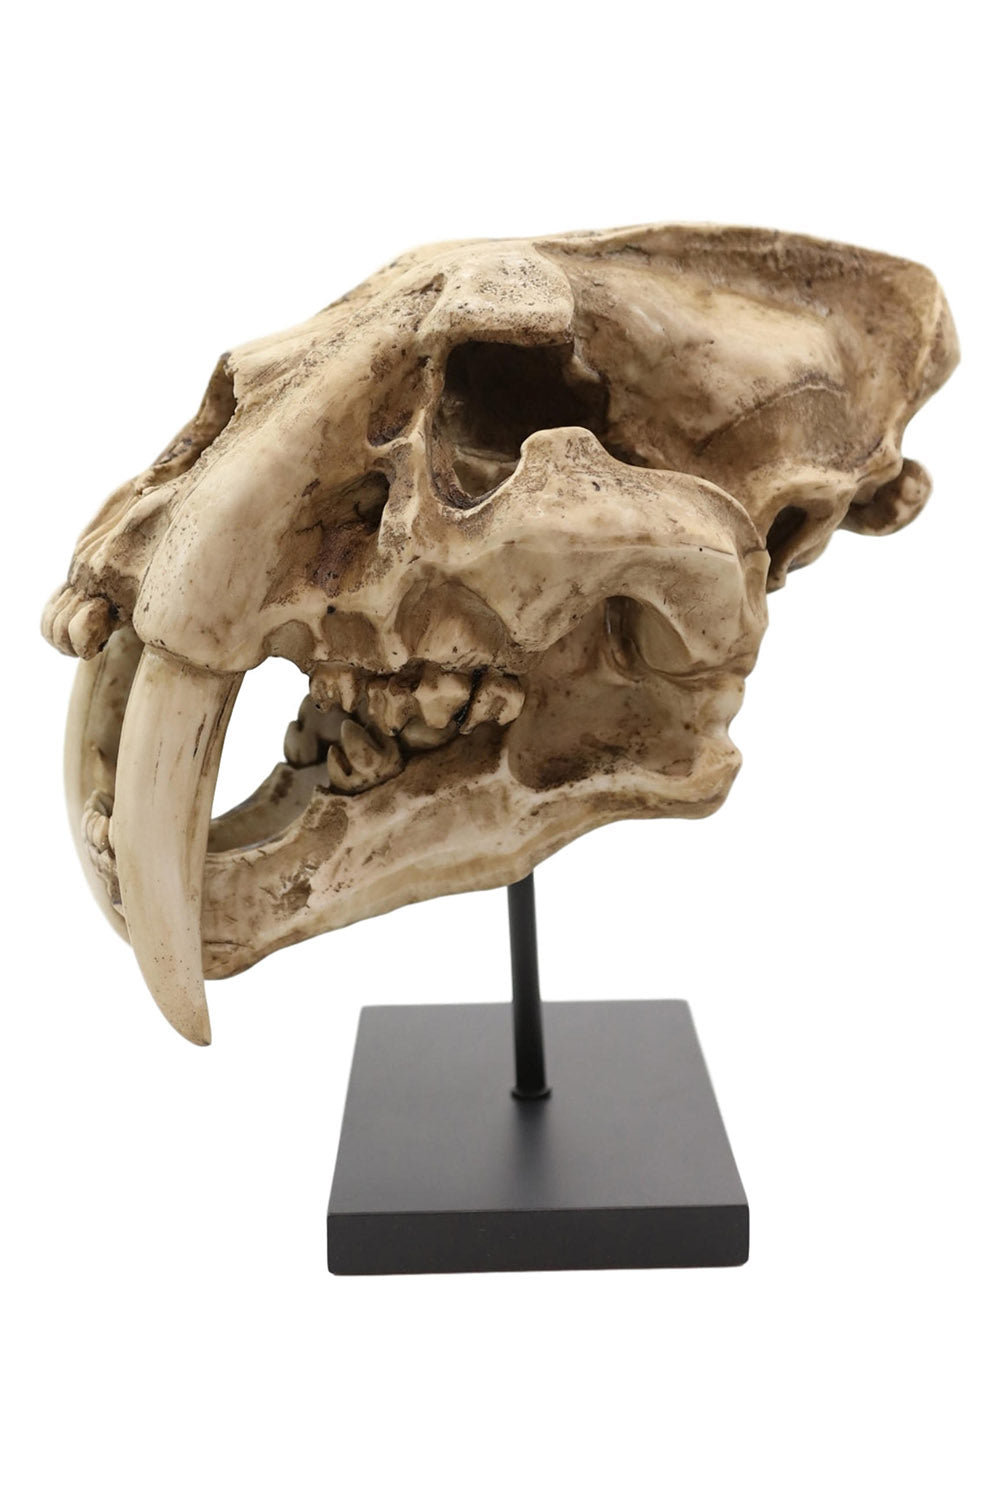 Sabertooth Skull Replica [Large]